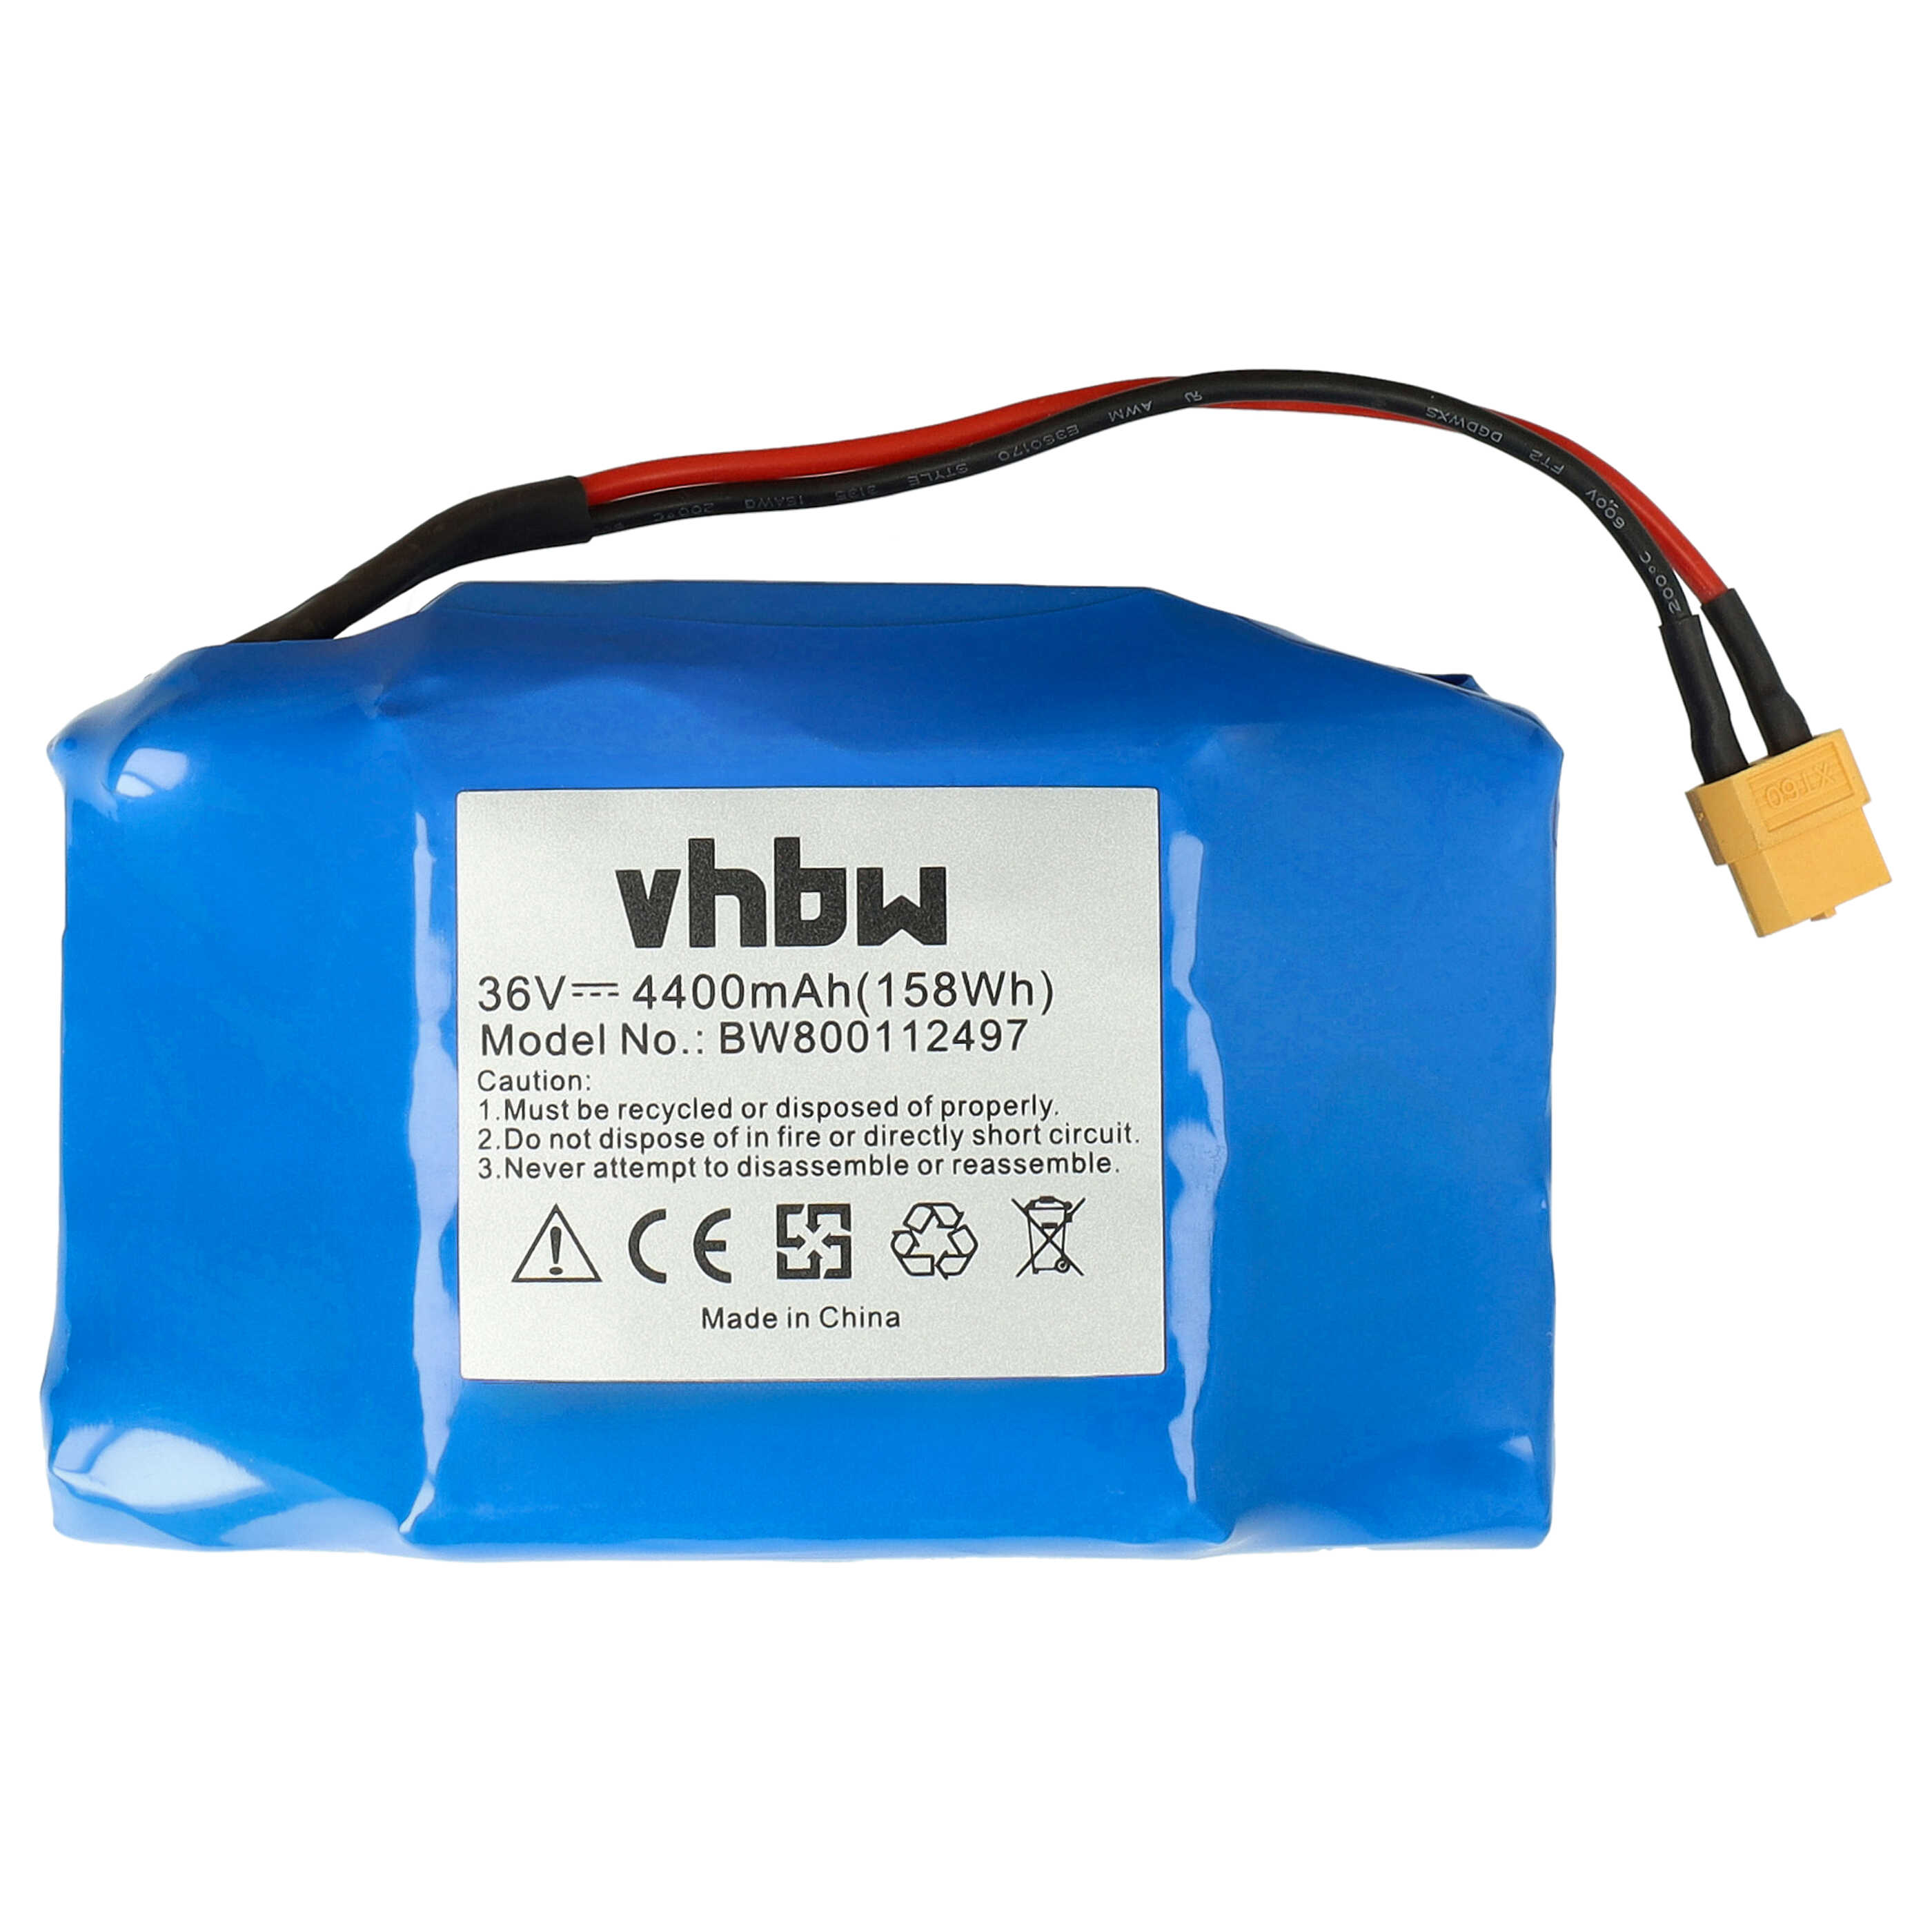 Batteria sostituisce Bluewheel 10IXR19/65-2, HPK-11 per hoverboard E-Board - 4400mAh 36V Li-Ion